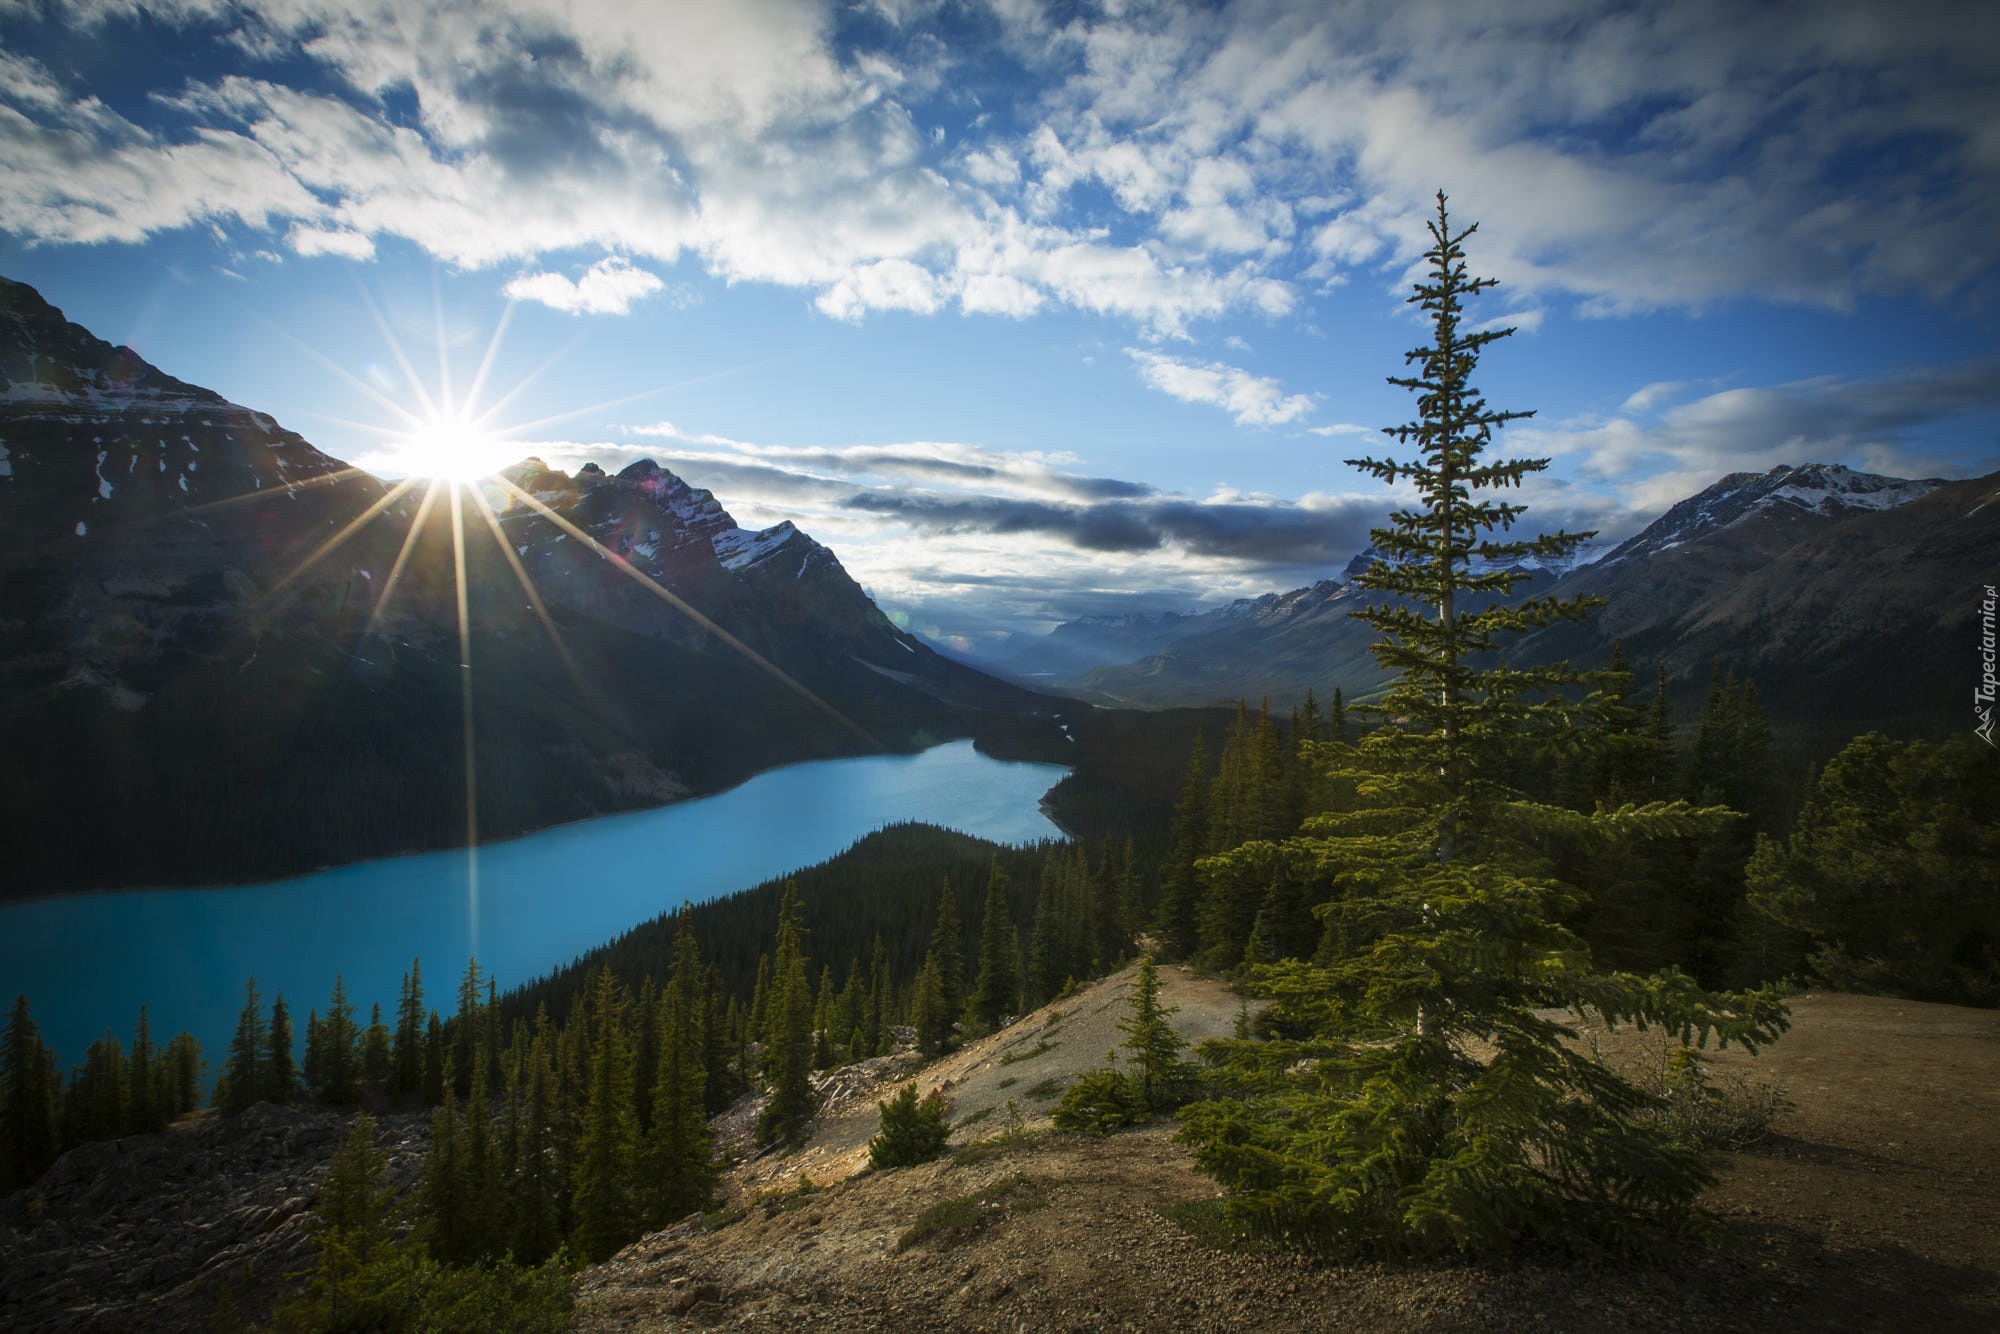 Park Narodowy Banff, Jezioro, Peyto Lake, Góry, Canadian Rockies, Lasy, Chmury, Promienie słońca, Alberta, Kanada